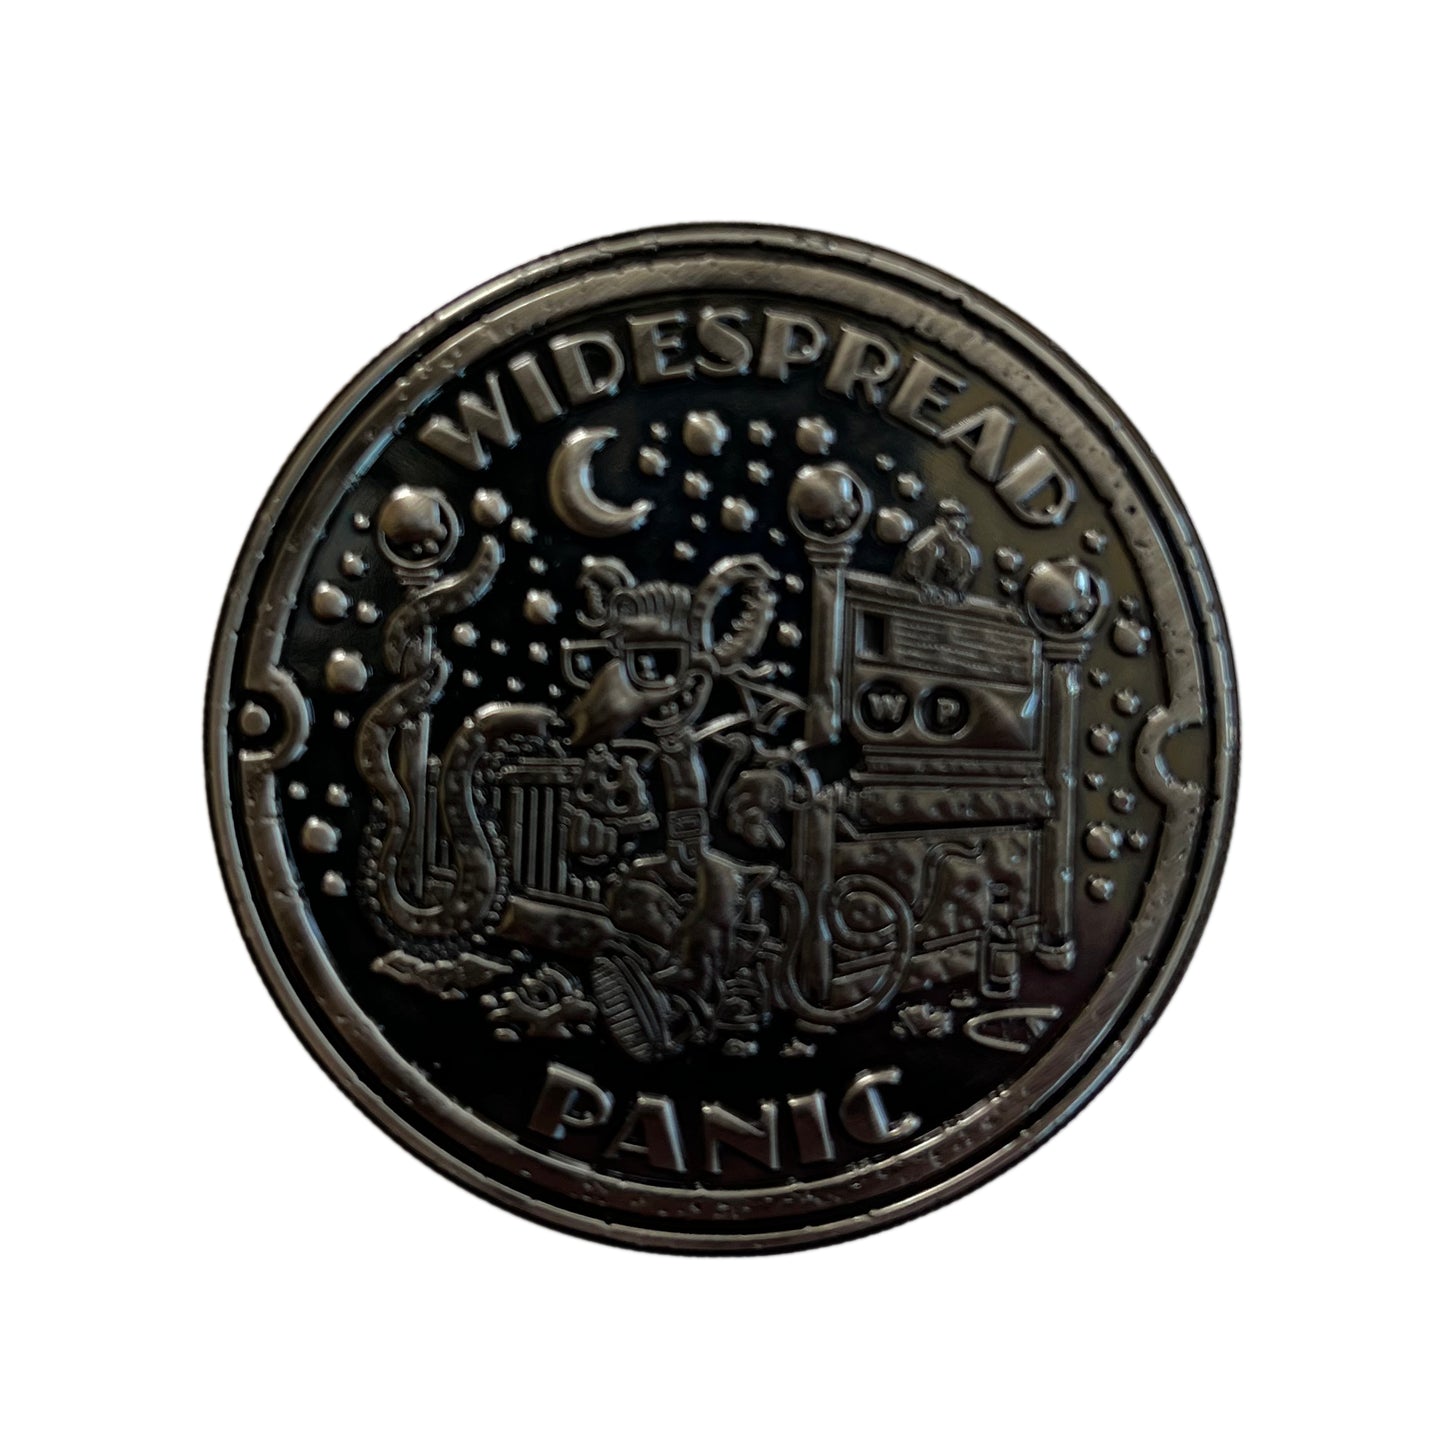 2022 NYC BEACON Event Coin